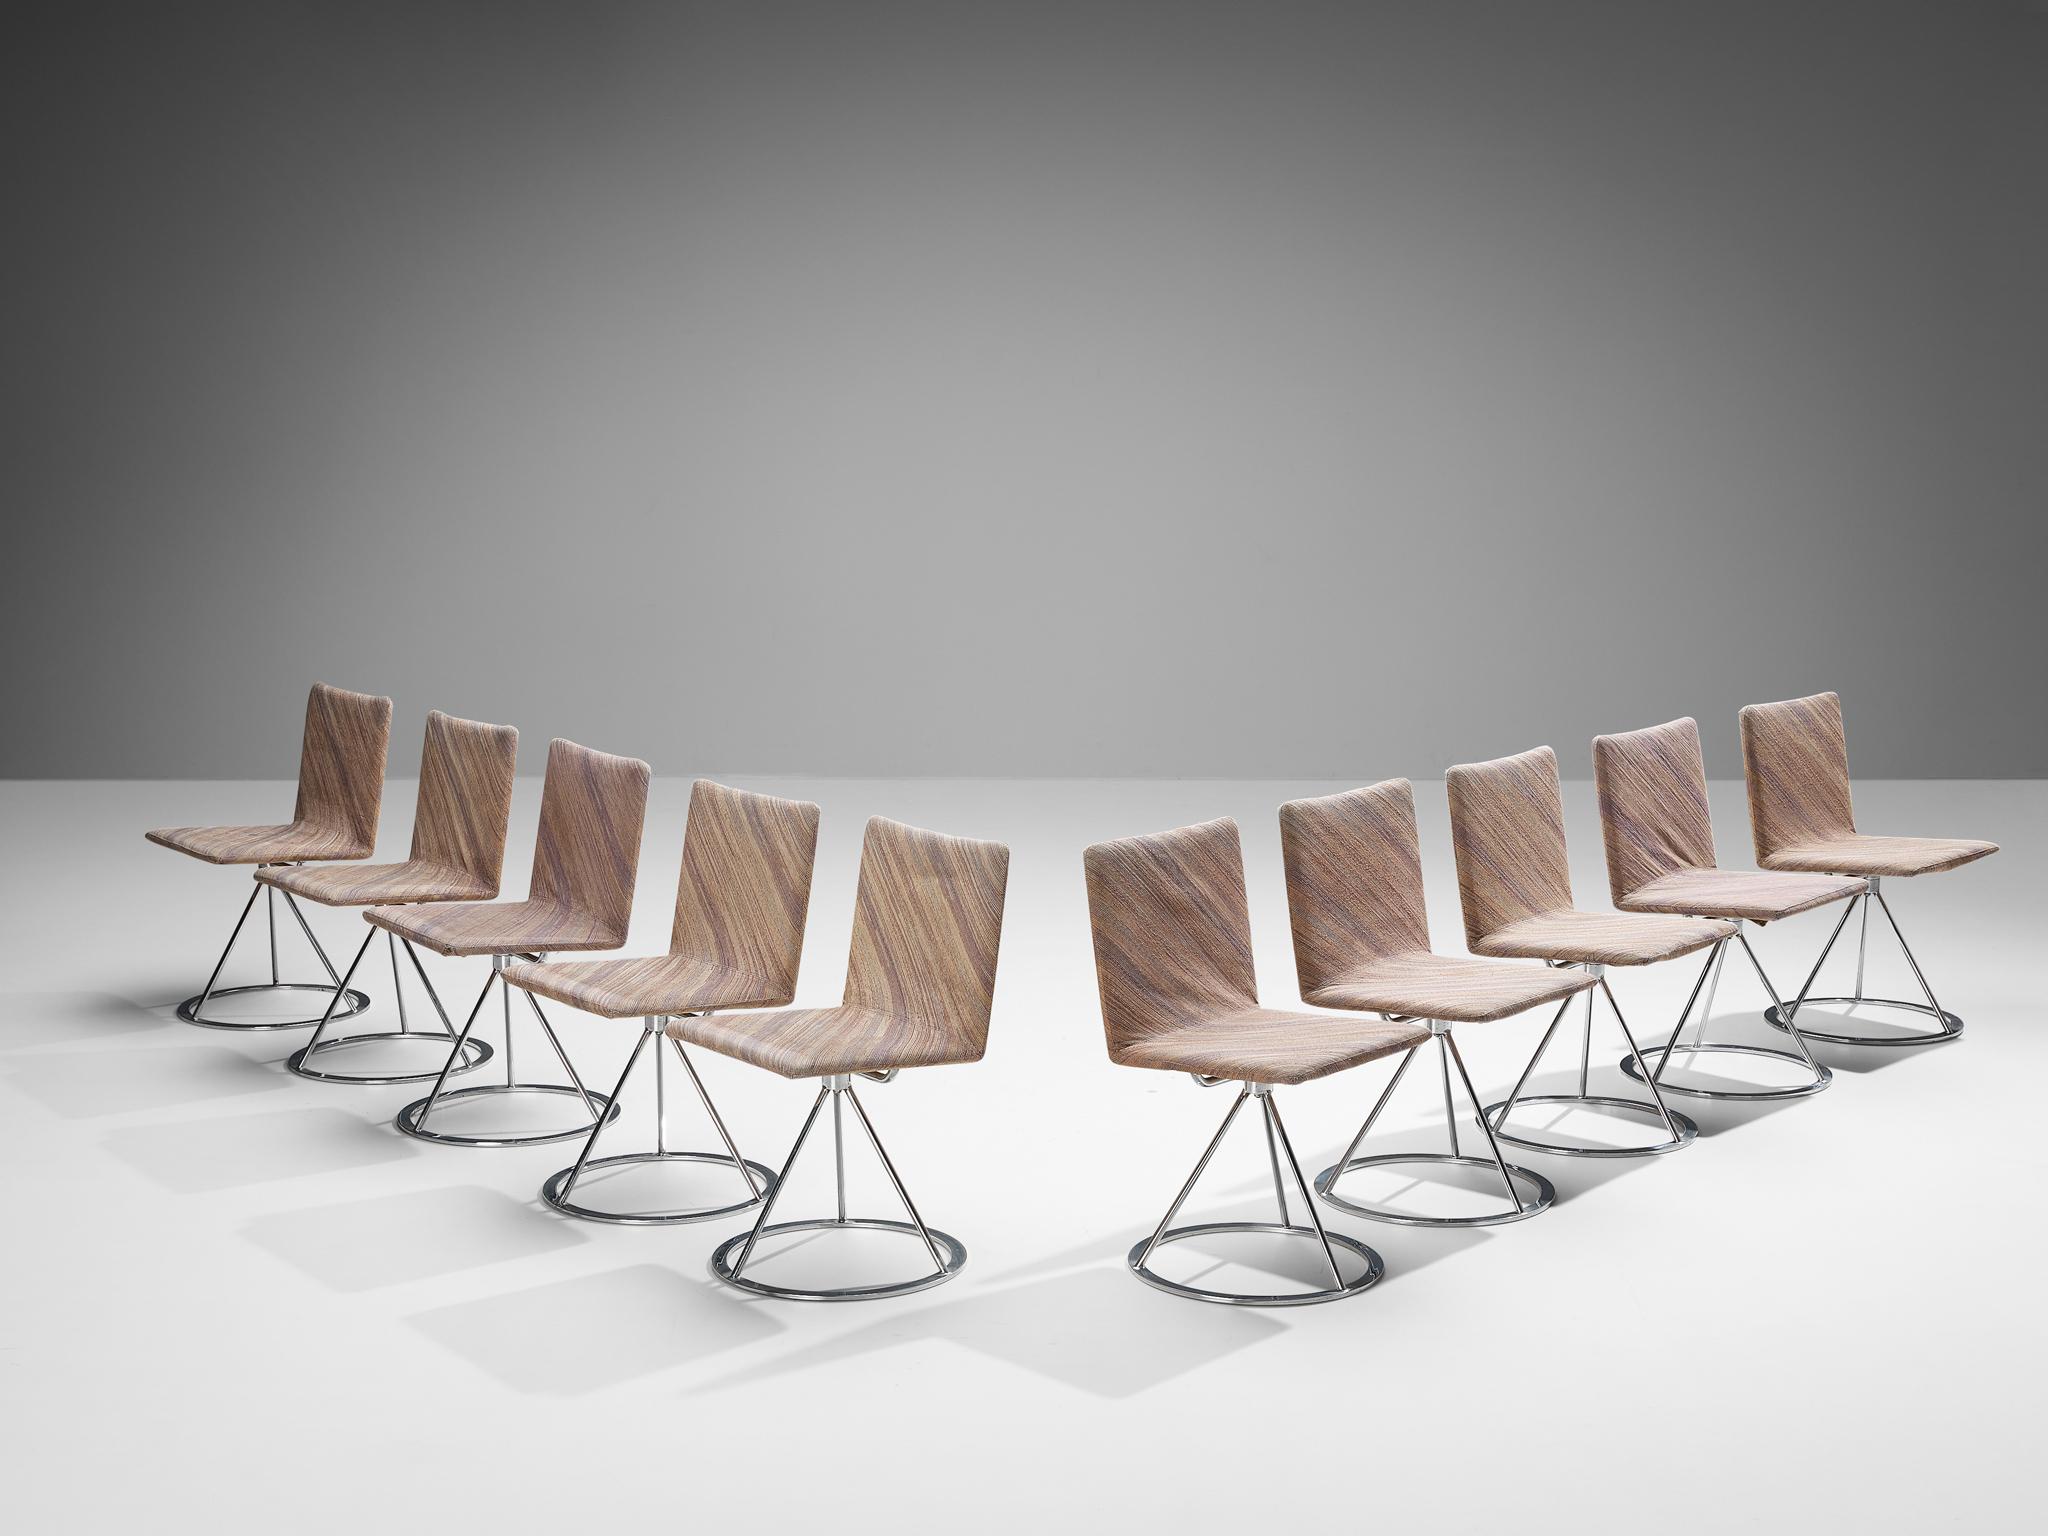 Alberto Salvati e Ambrogio Tresoldi pour Saporiti, ensemble de dix chaises pivotantes 'Dania', tissu, acier chromé, Italie, années 1980

Ces chaises pivotantes ont été conçues par le duo de designers Alberto Salvati et Ambrogio Tresoldi pour